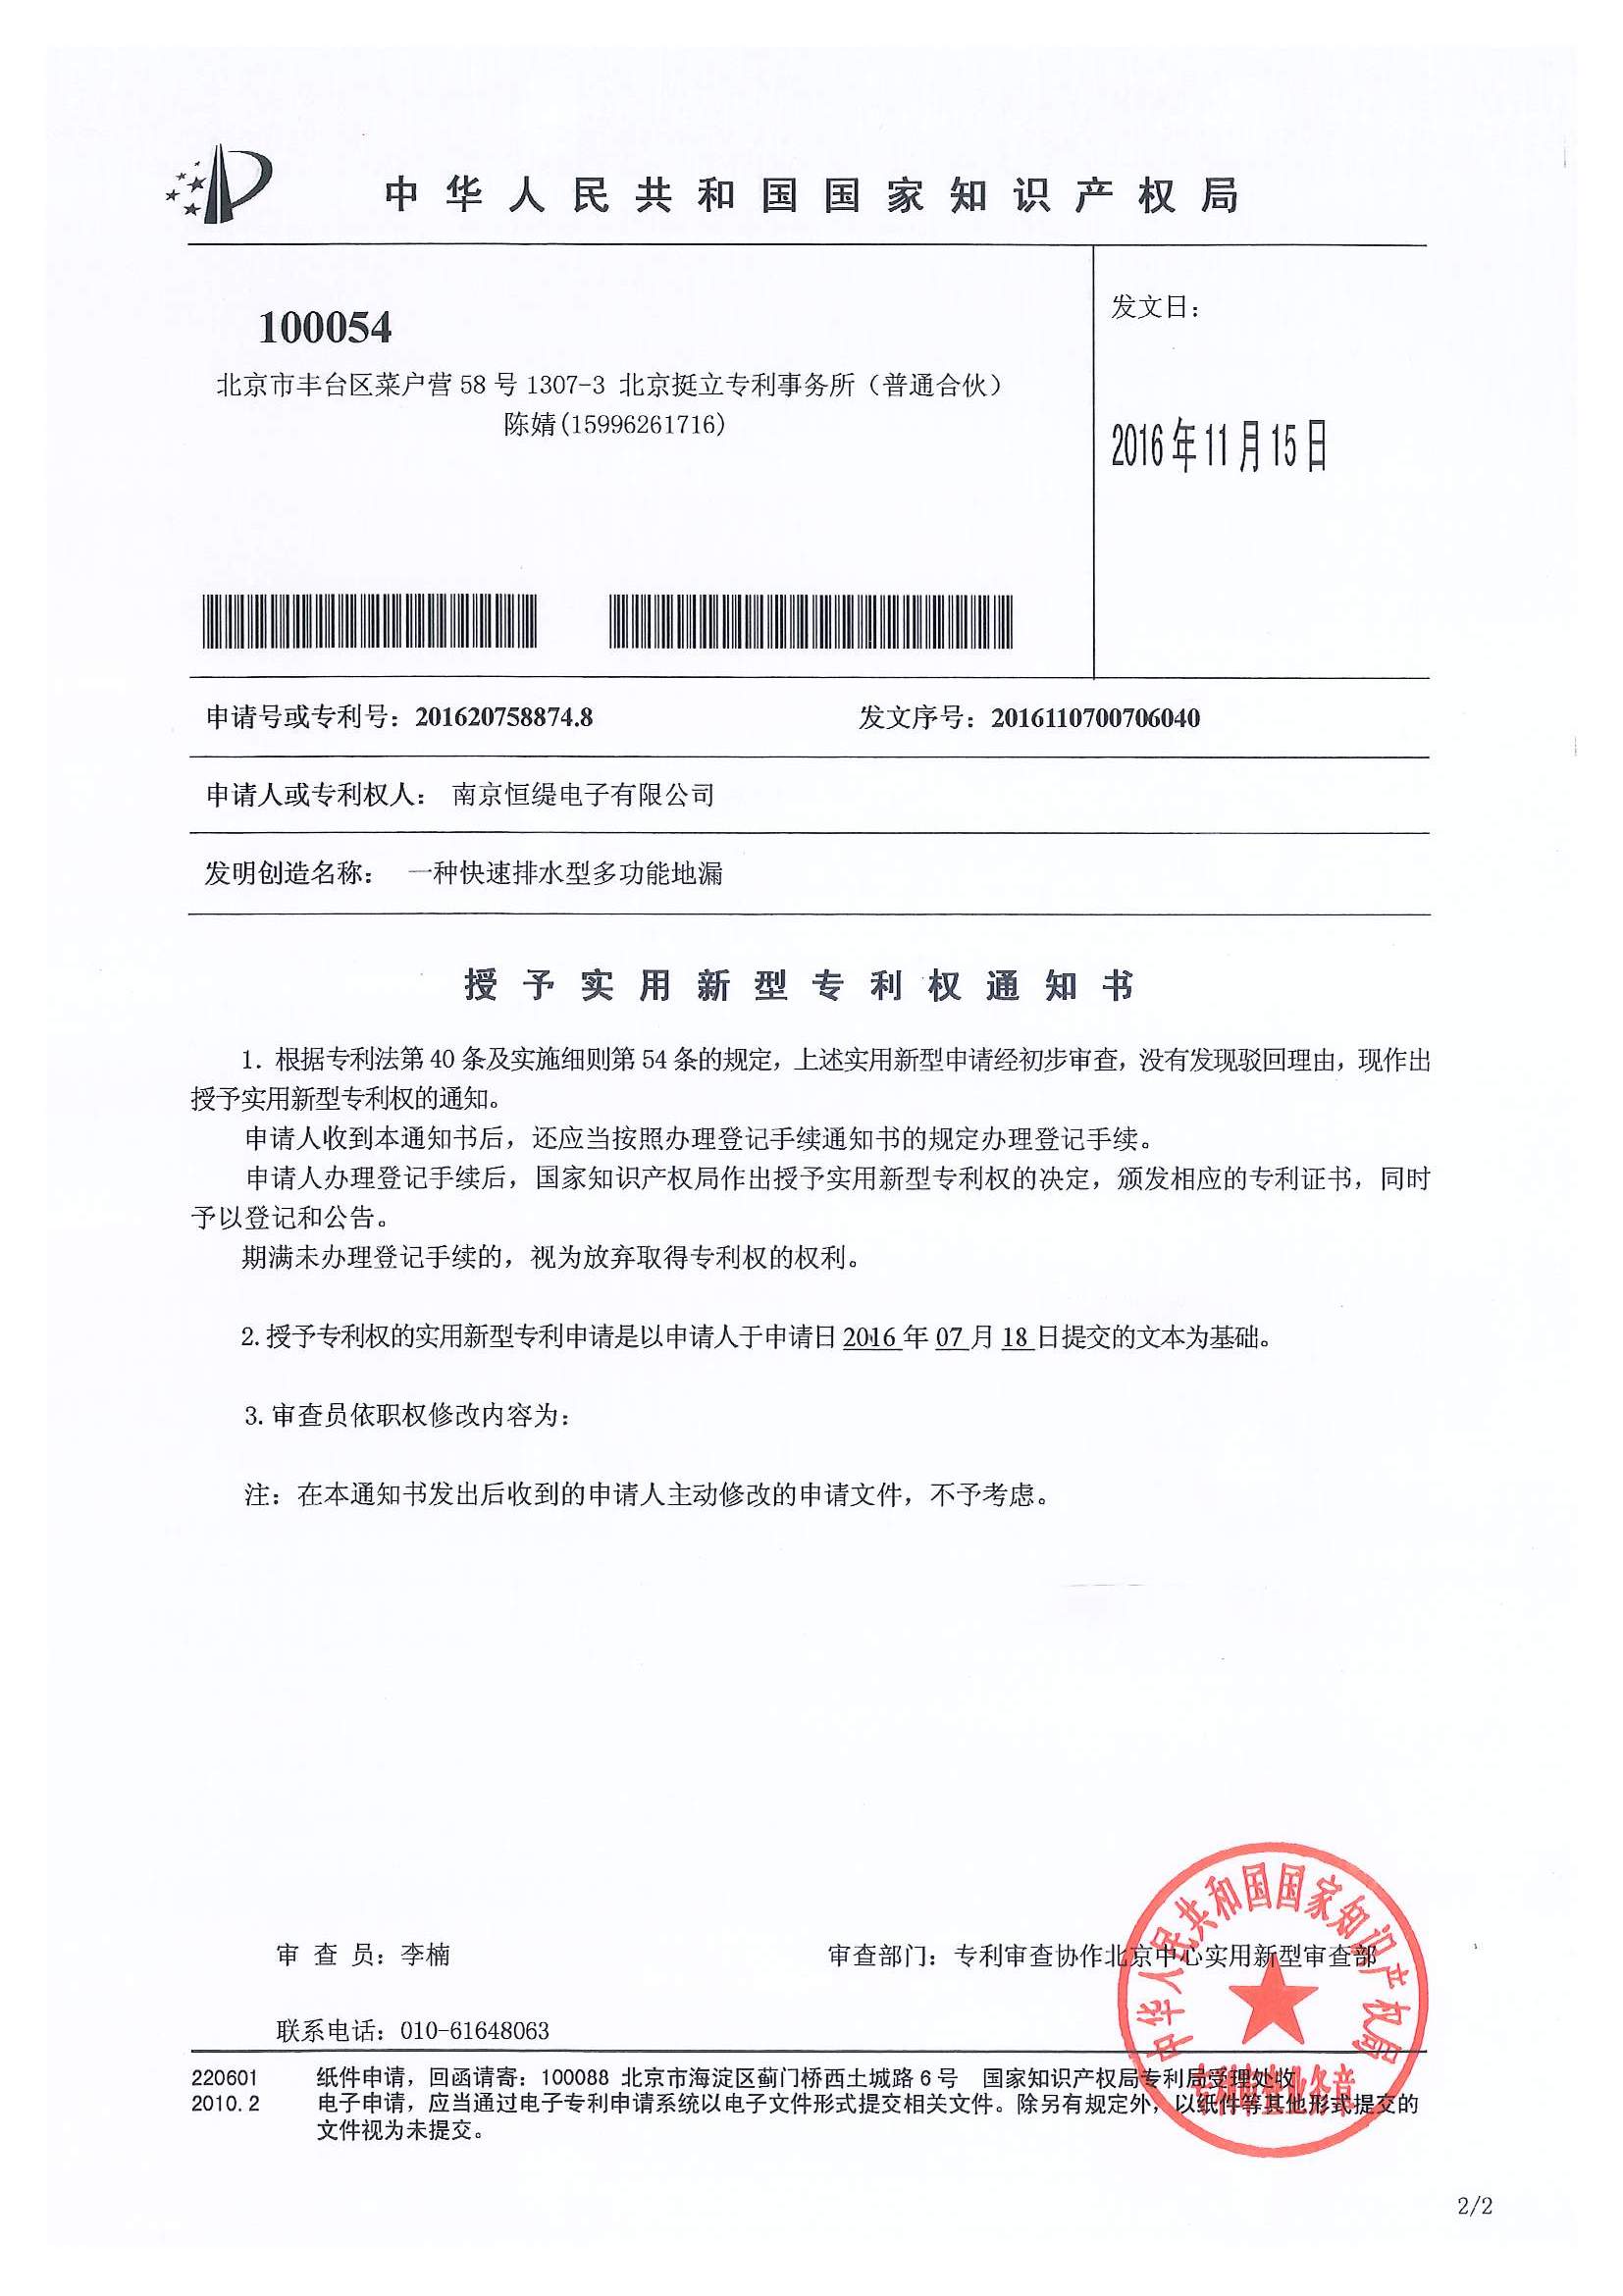 专利授权通知书0161201